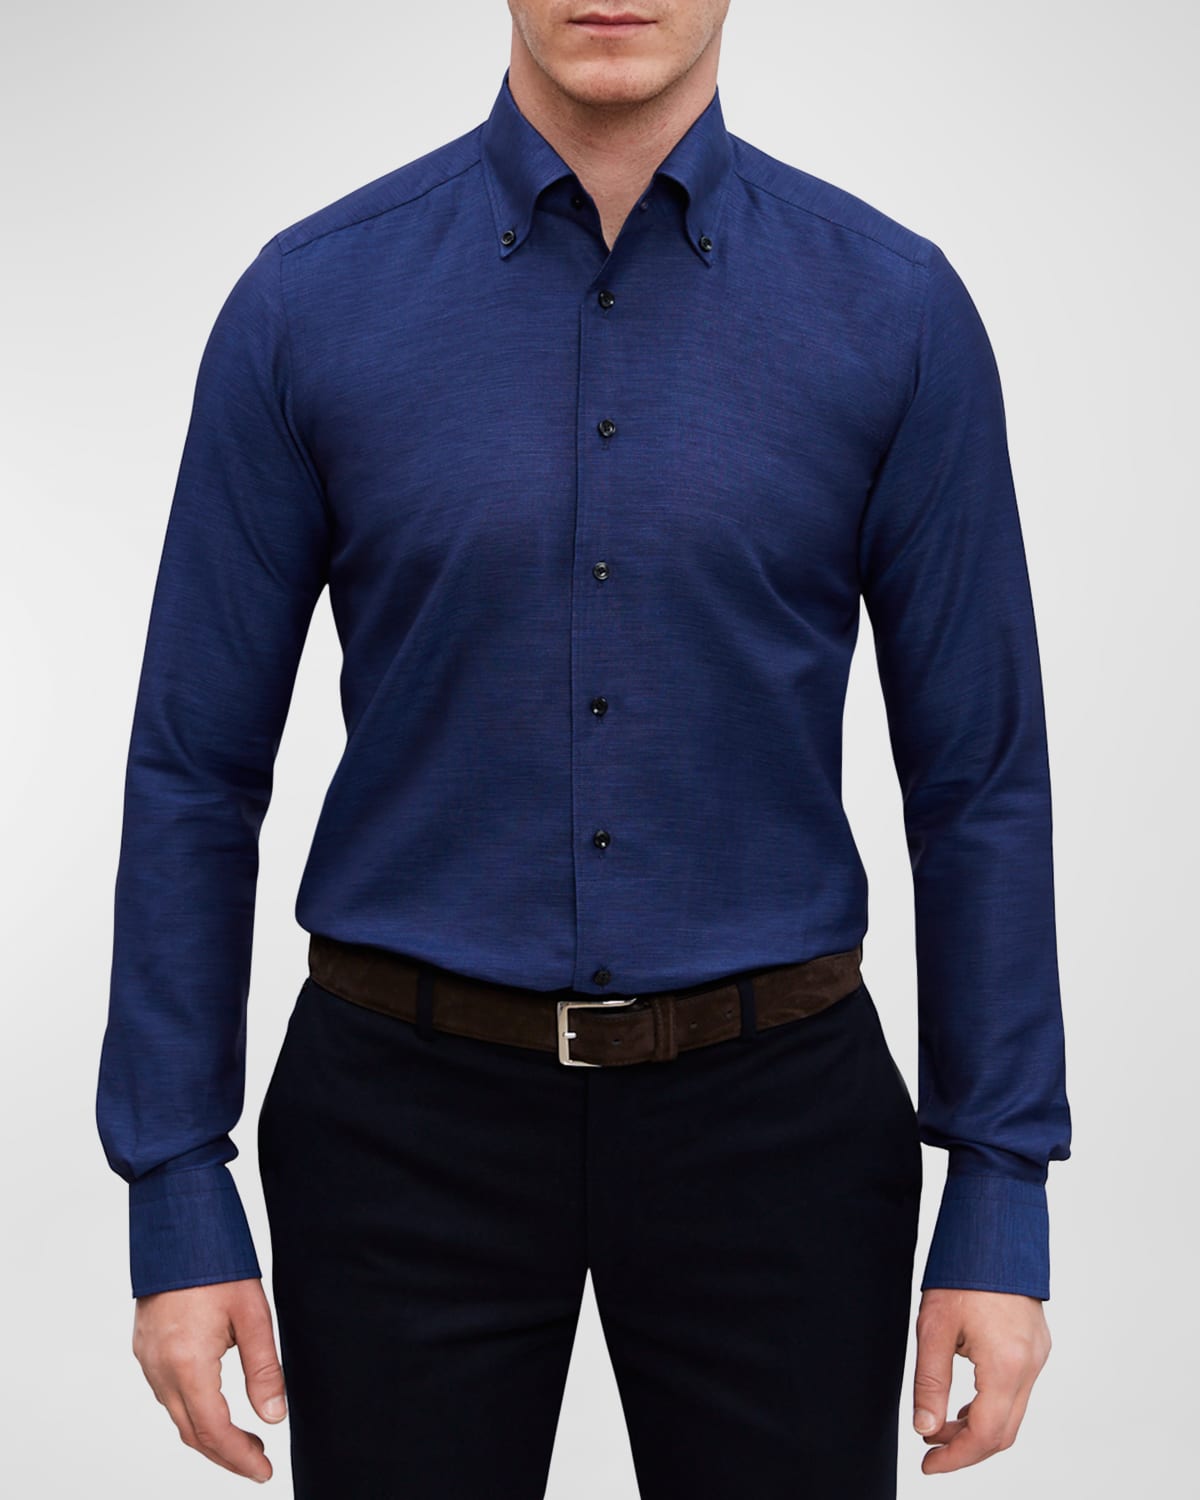 Men's Cotton-Linen Twill Sport Shirt